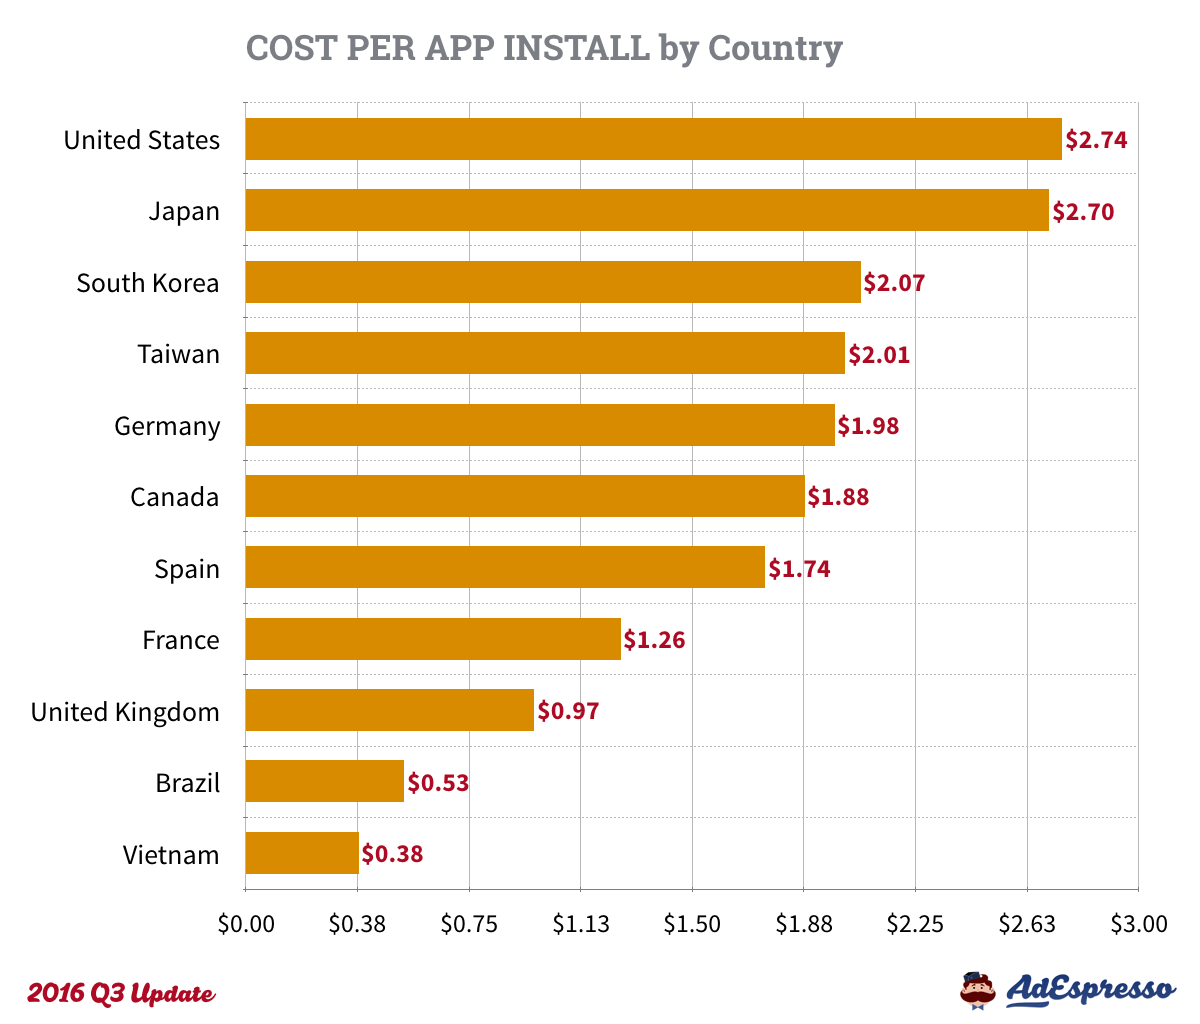 AdEspresso Cost Per App Install data